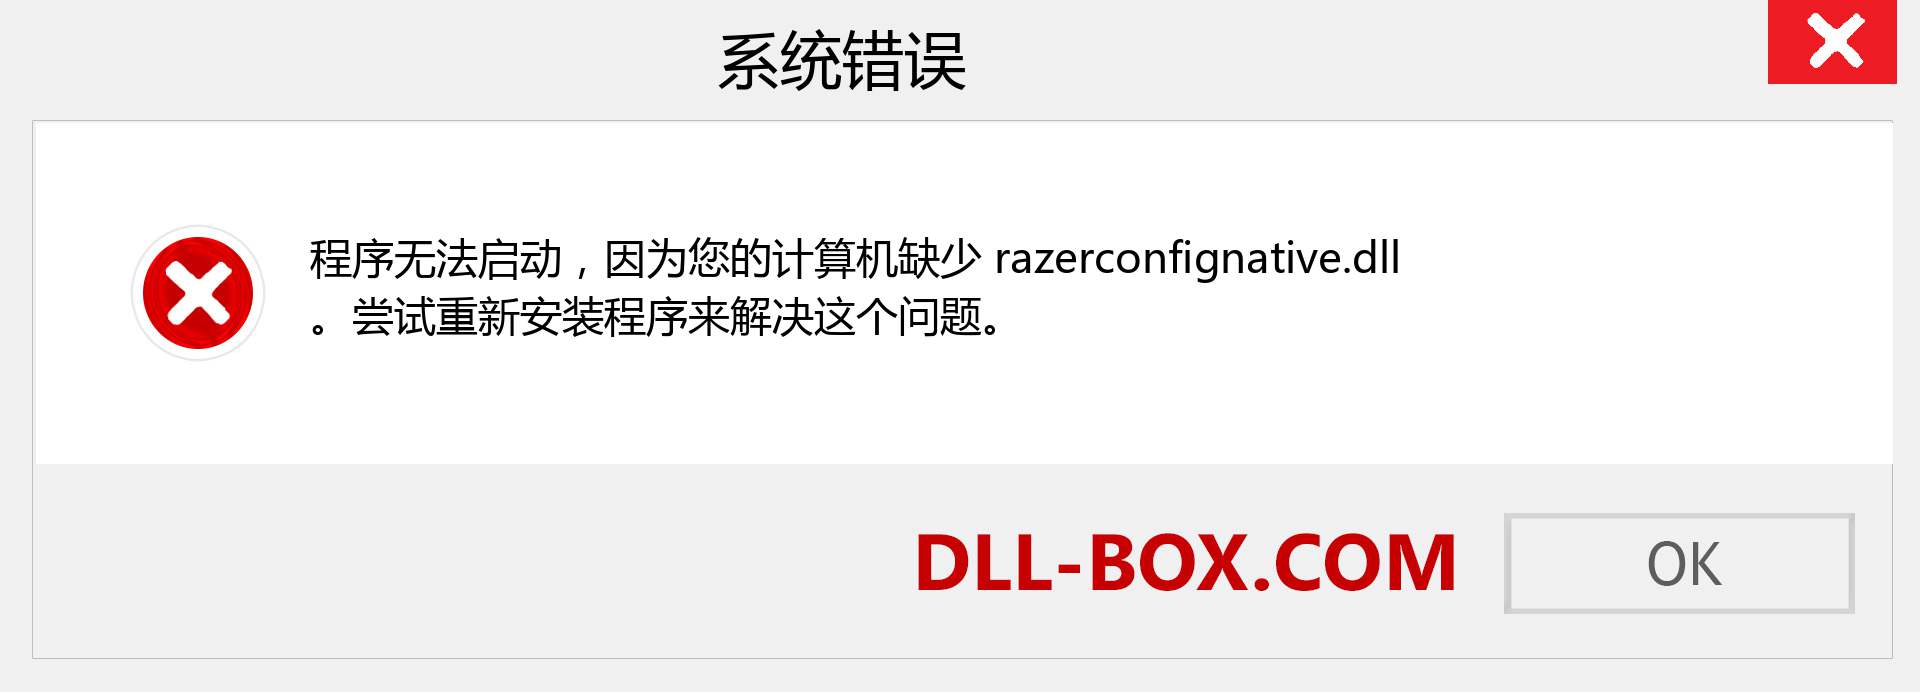 razerconfignative.dll 文件丢失？。 适用于 Windows 7、8、10 的下载 - 修复 Windows、照片、图像上的 razerconfignative dll 丢失错误